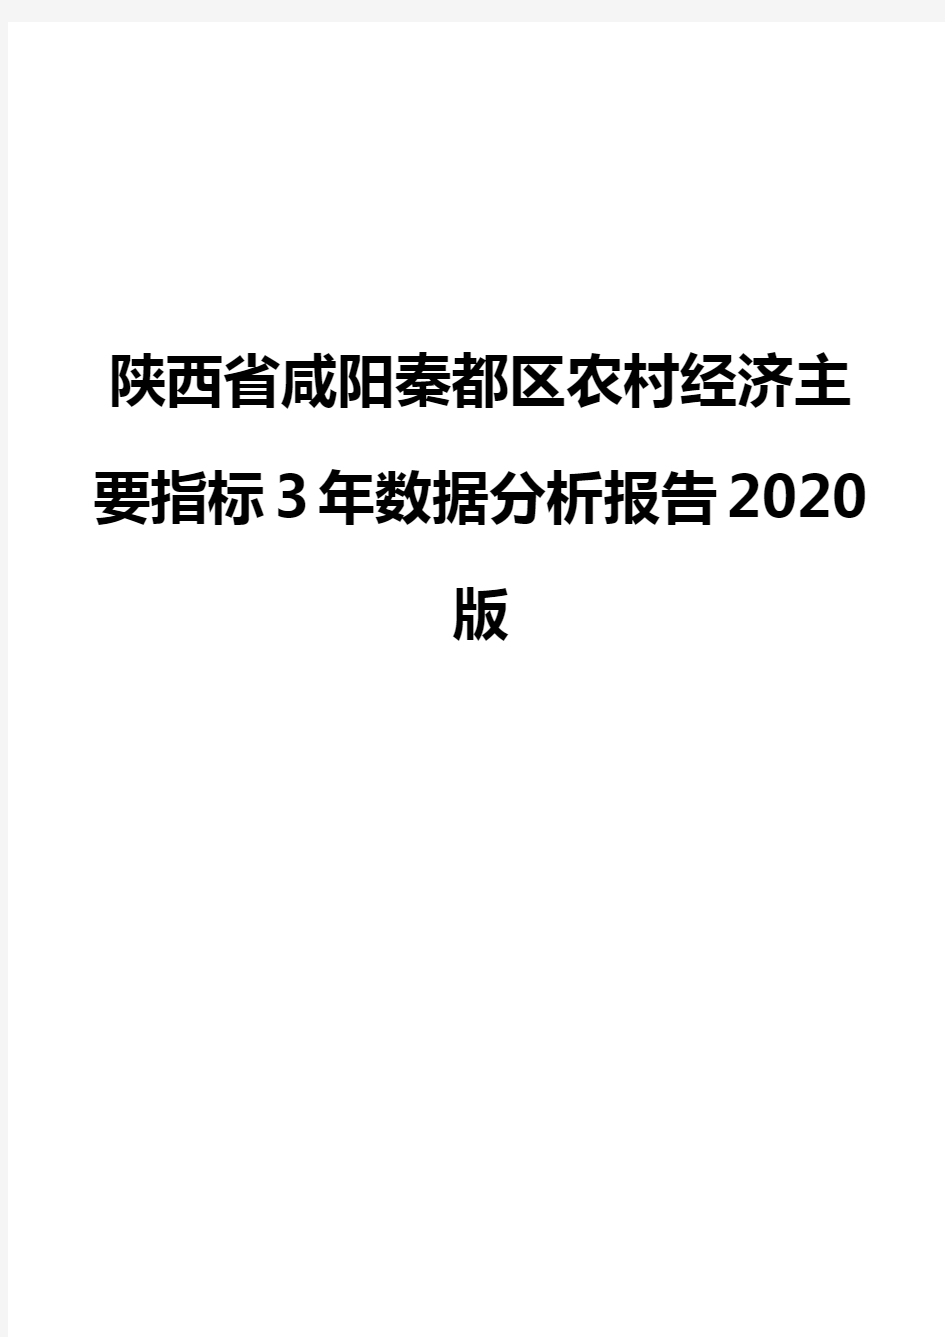 陕西省咸阳秦都区农村经济主要指标3年数据分析报告2020版